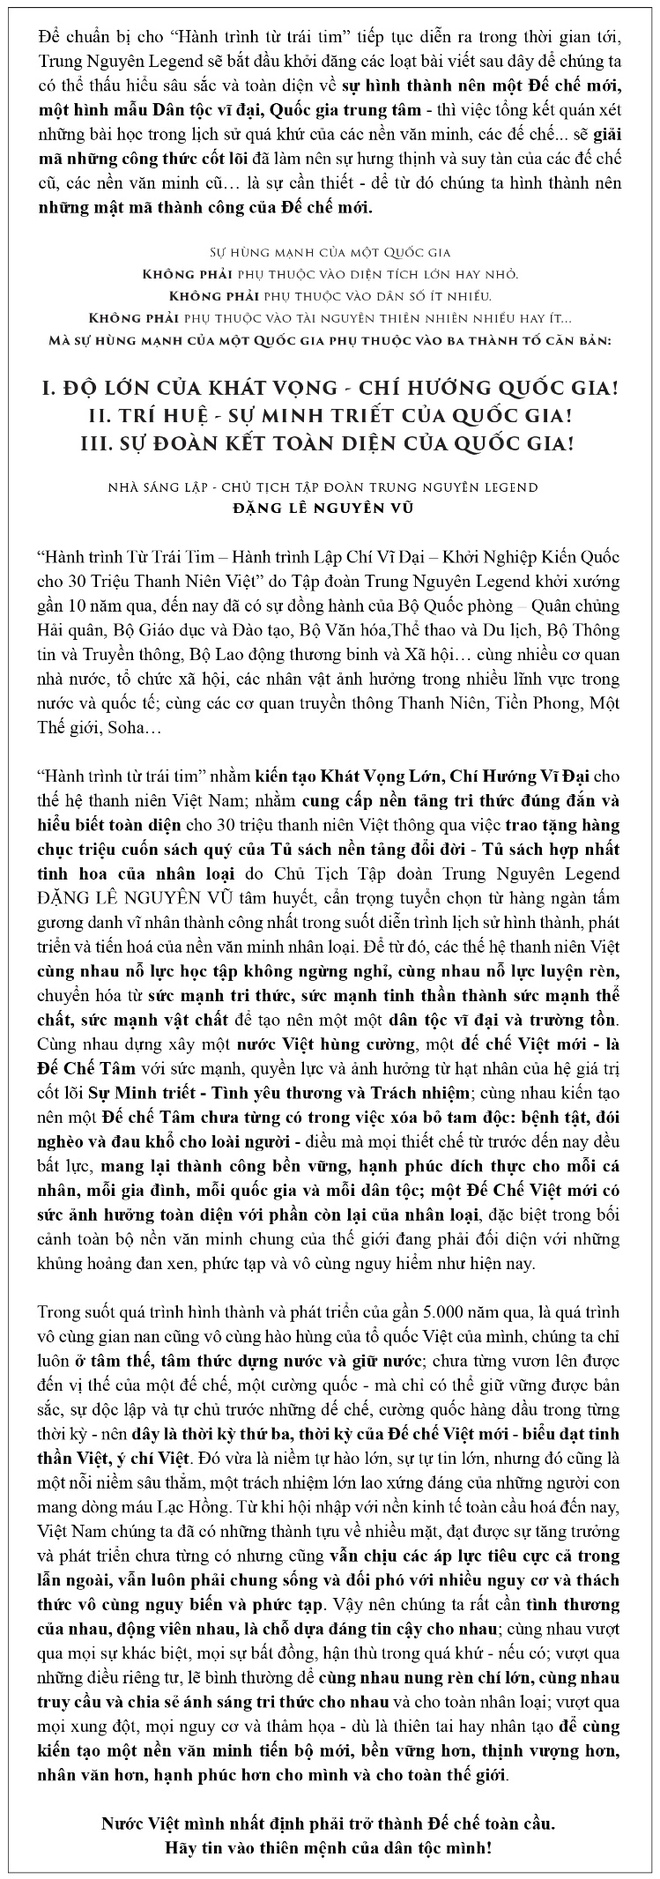 Thập Nhị Binh Thư - Binh thư số 7: Binh pháp Khổng Minh - Ảnh 1.